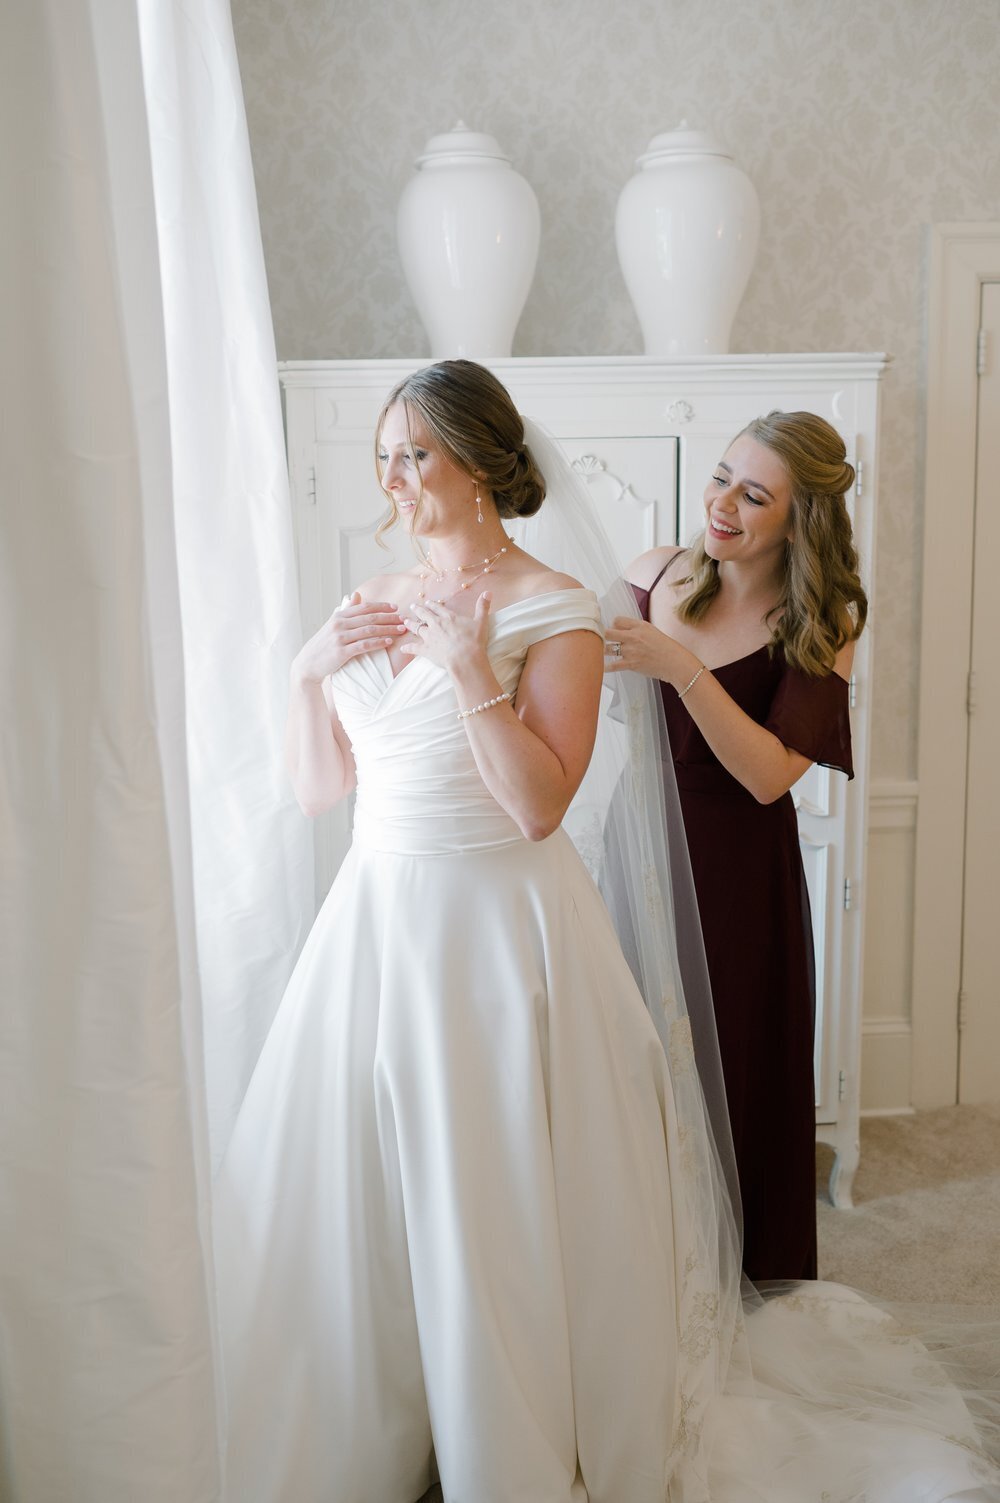 Bridesmaid helps bride get ready